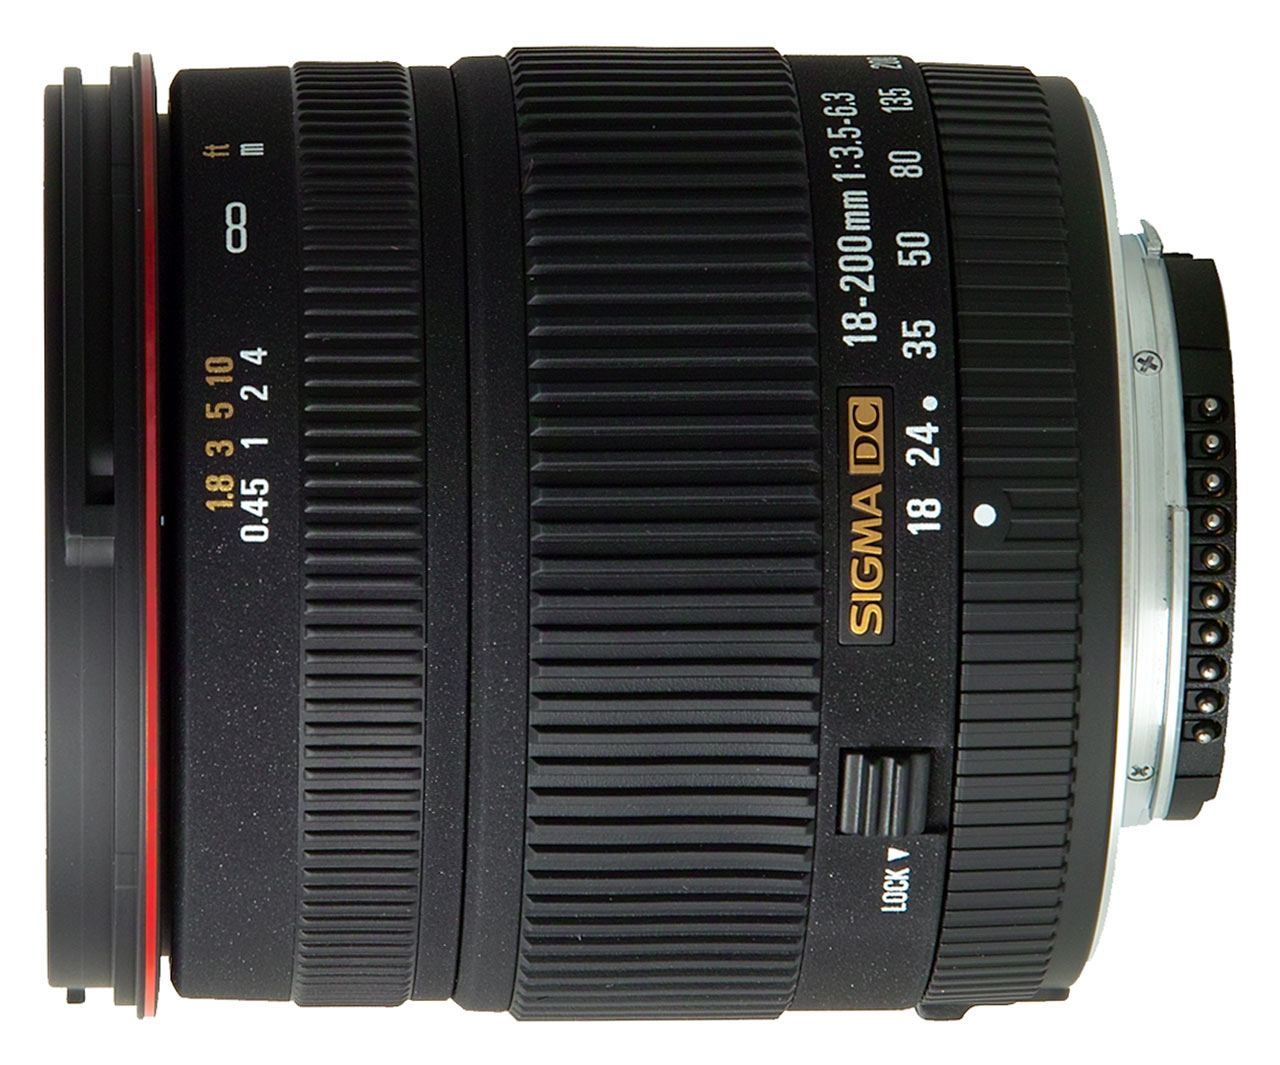 Sigma для Nikon: 18-200mm F3.5-6.3 DC со встроенным AF мотором // Новости фотоиндустрии // Клуб